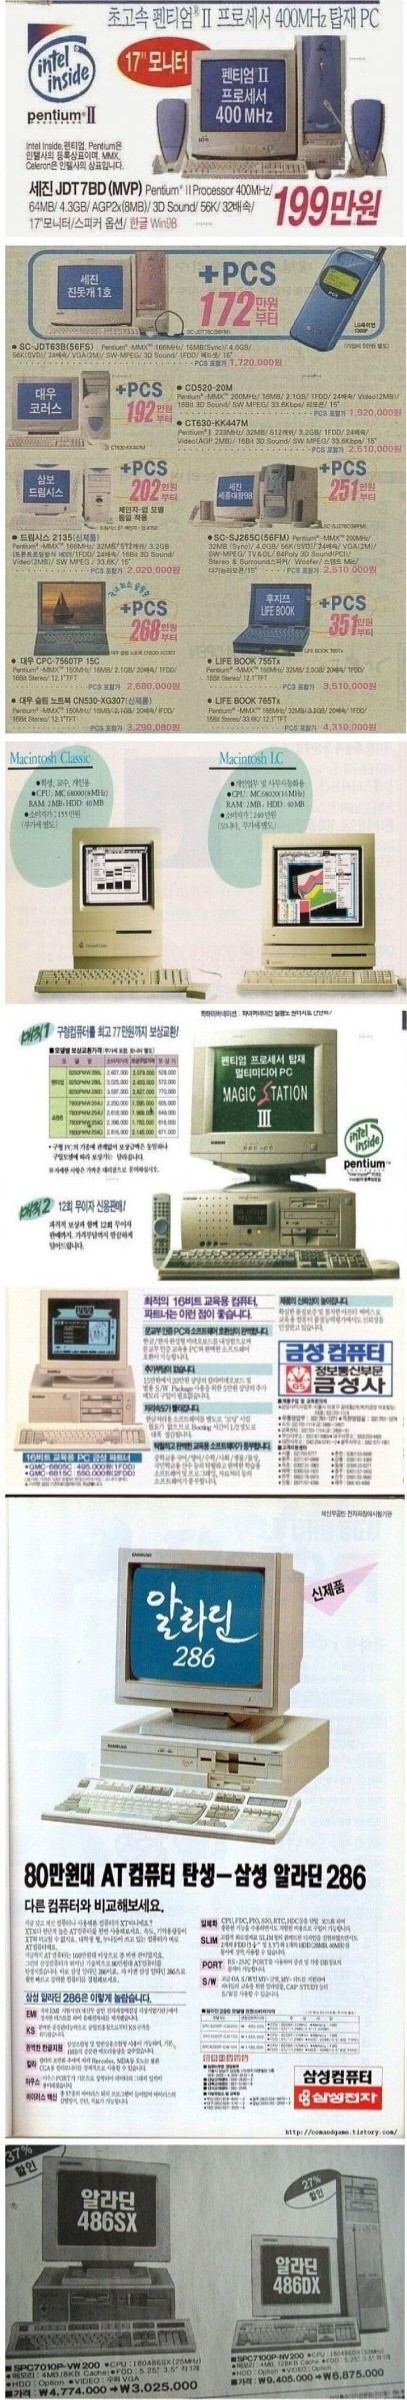 그 시절.. 90년대 컴퓨터 가격